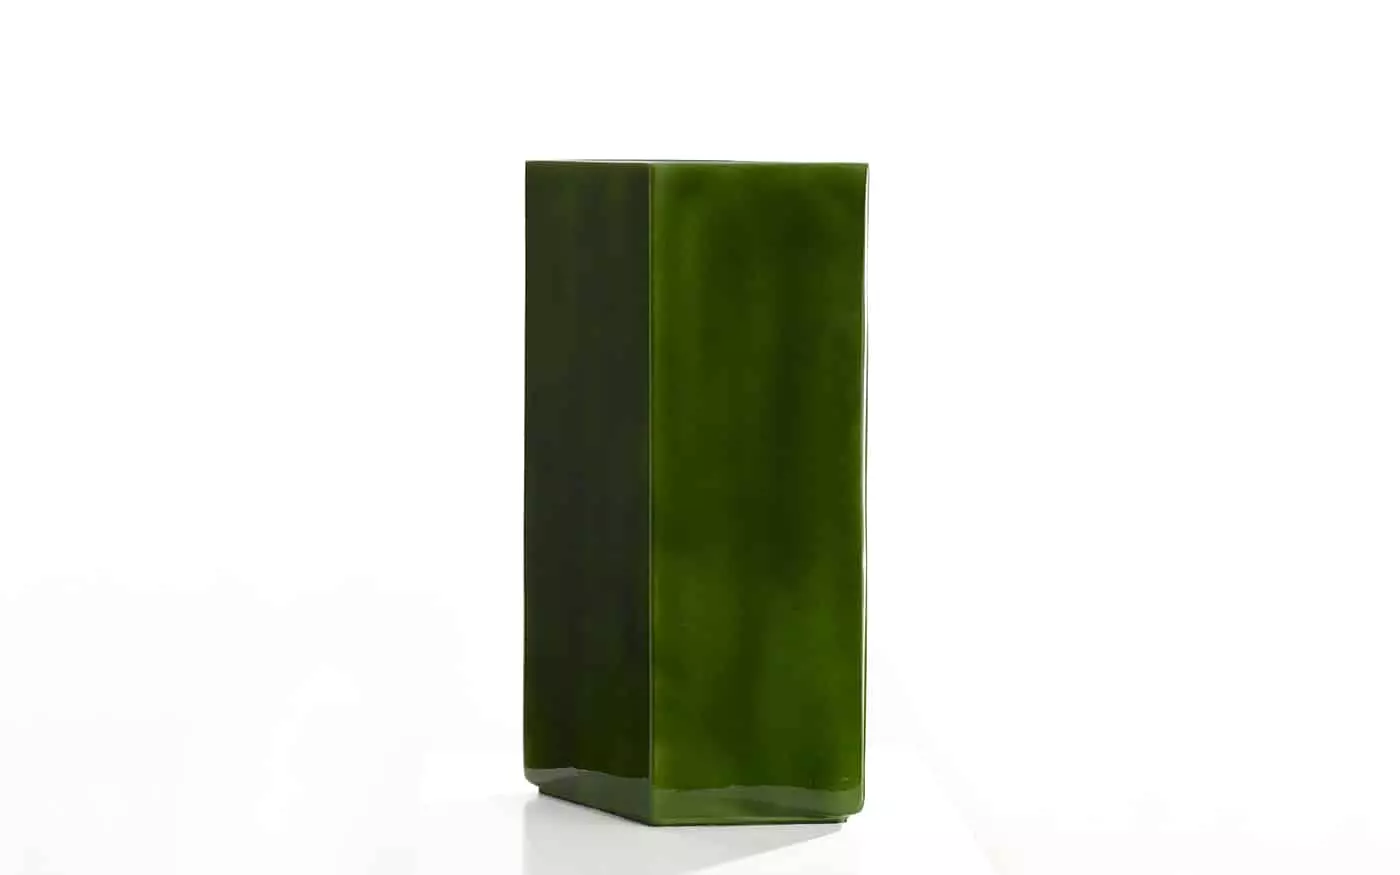 Vase Losange 84 green - Ronan & Erwan Bouroullec - Table - Galerie kreo